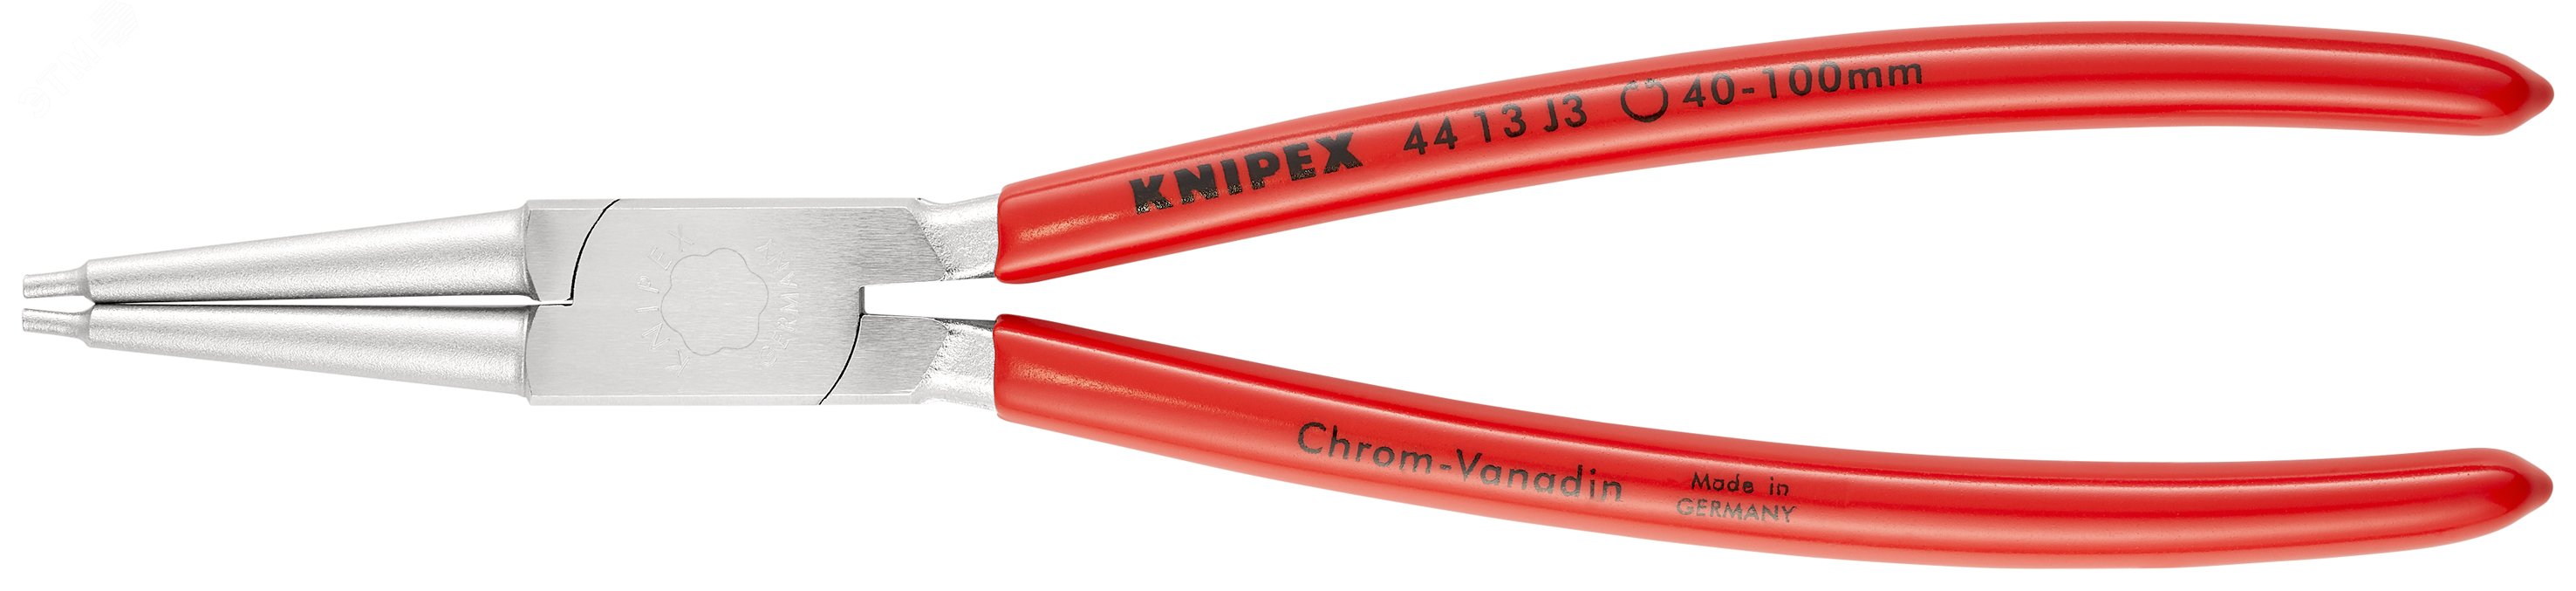 Щипцы для внутренних стопорных колец прямые губки посадочный размер 40-100мм диаметр наконечников 23мм L=225мм Cr-V хромированные обливные рукоятки KN-4413J3 KNIPEX - превью 3